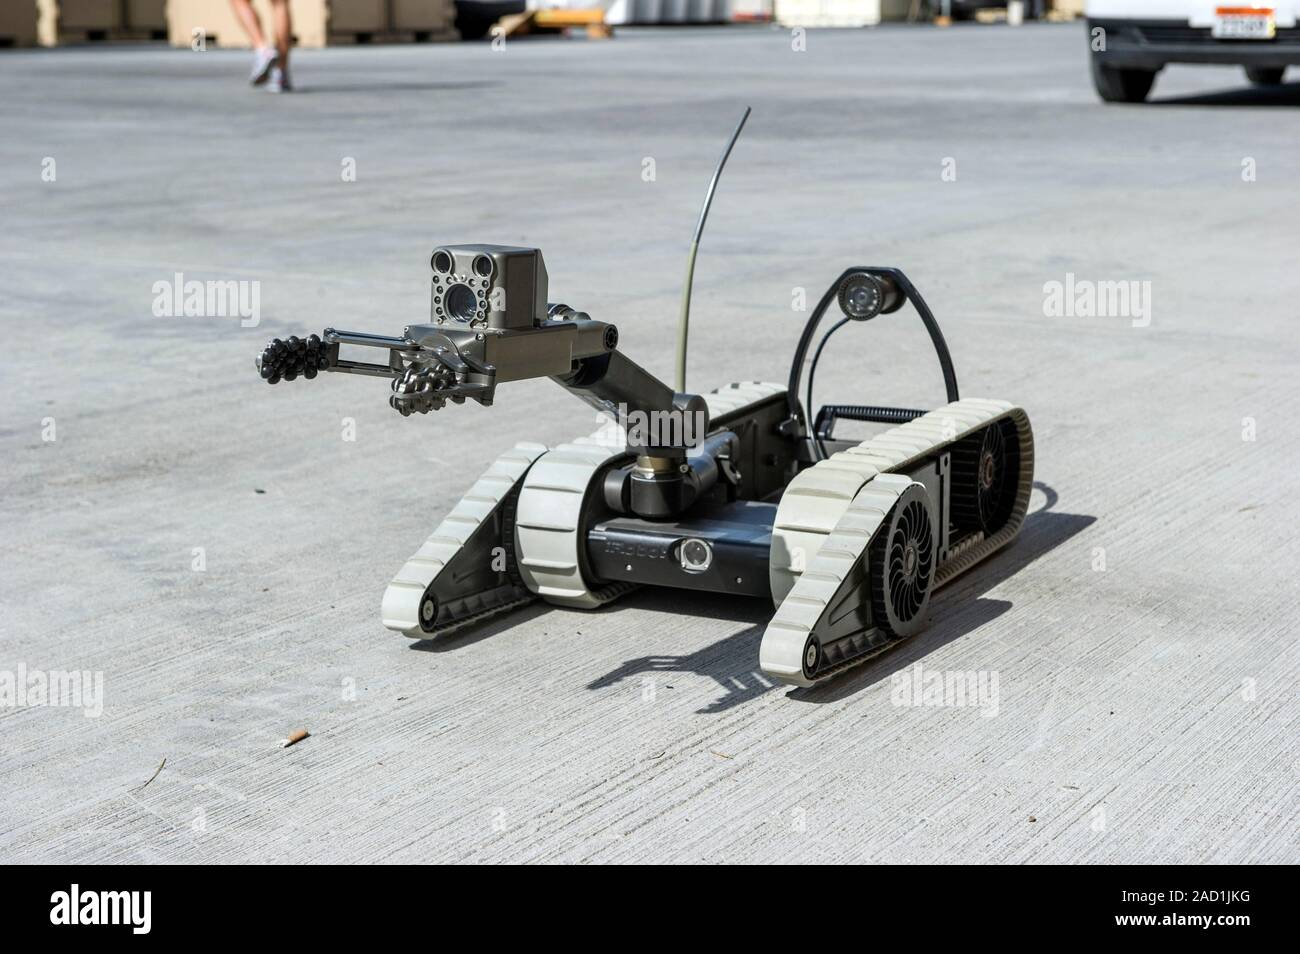 Xm1219 вооруженный роботизированный автомобиль